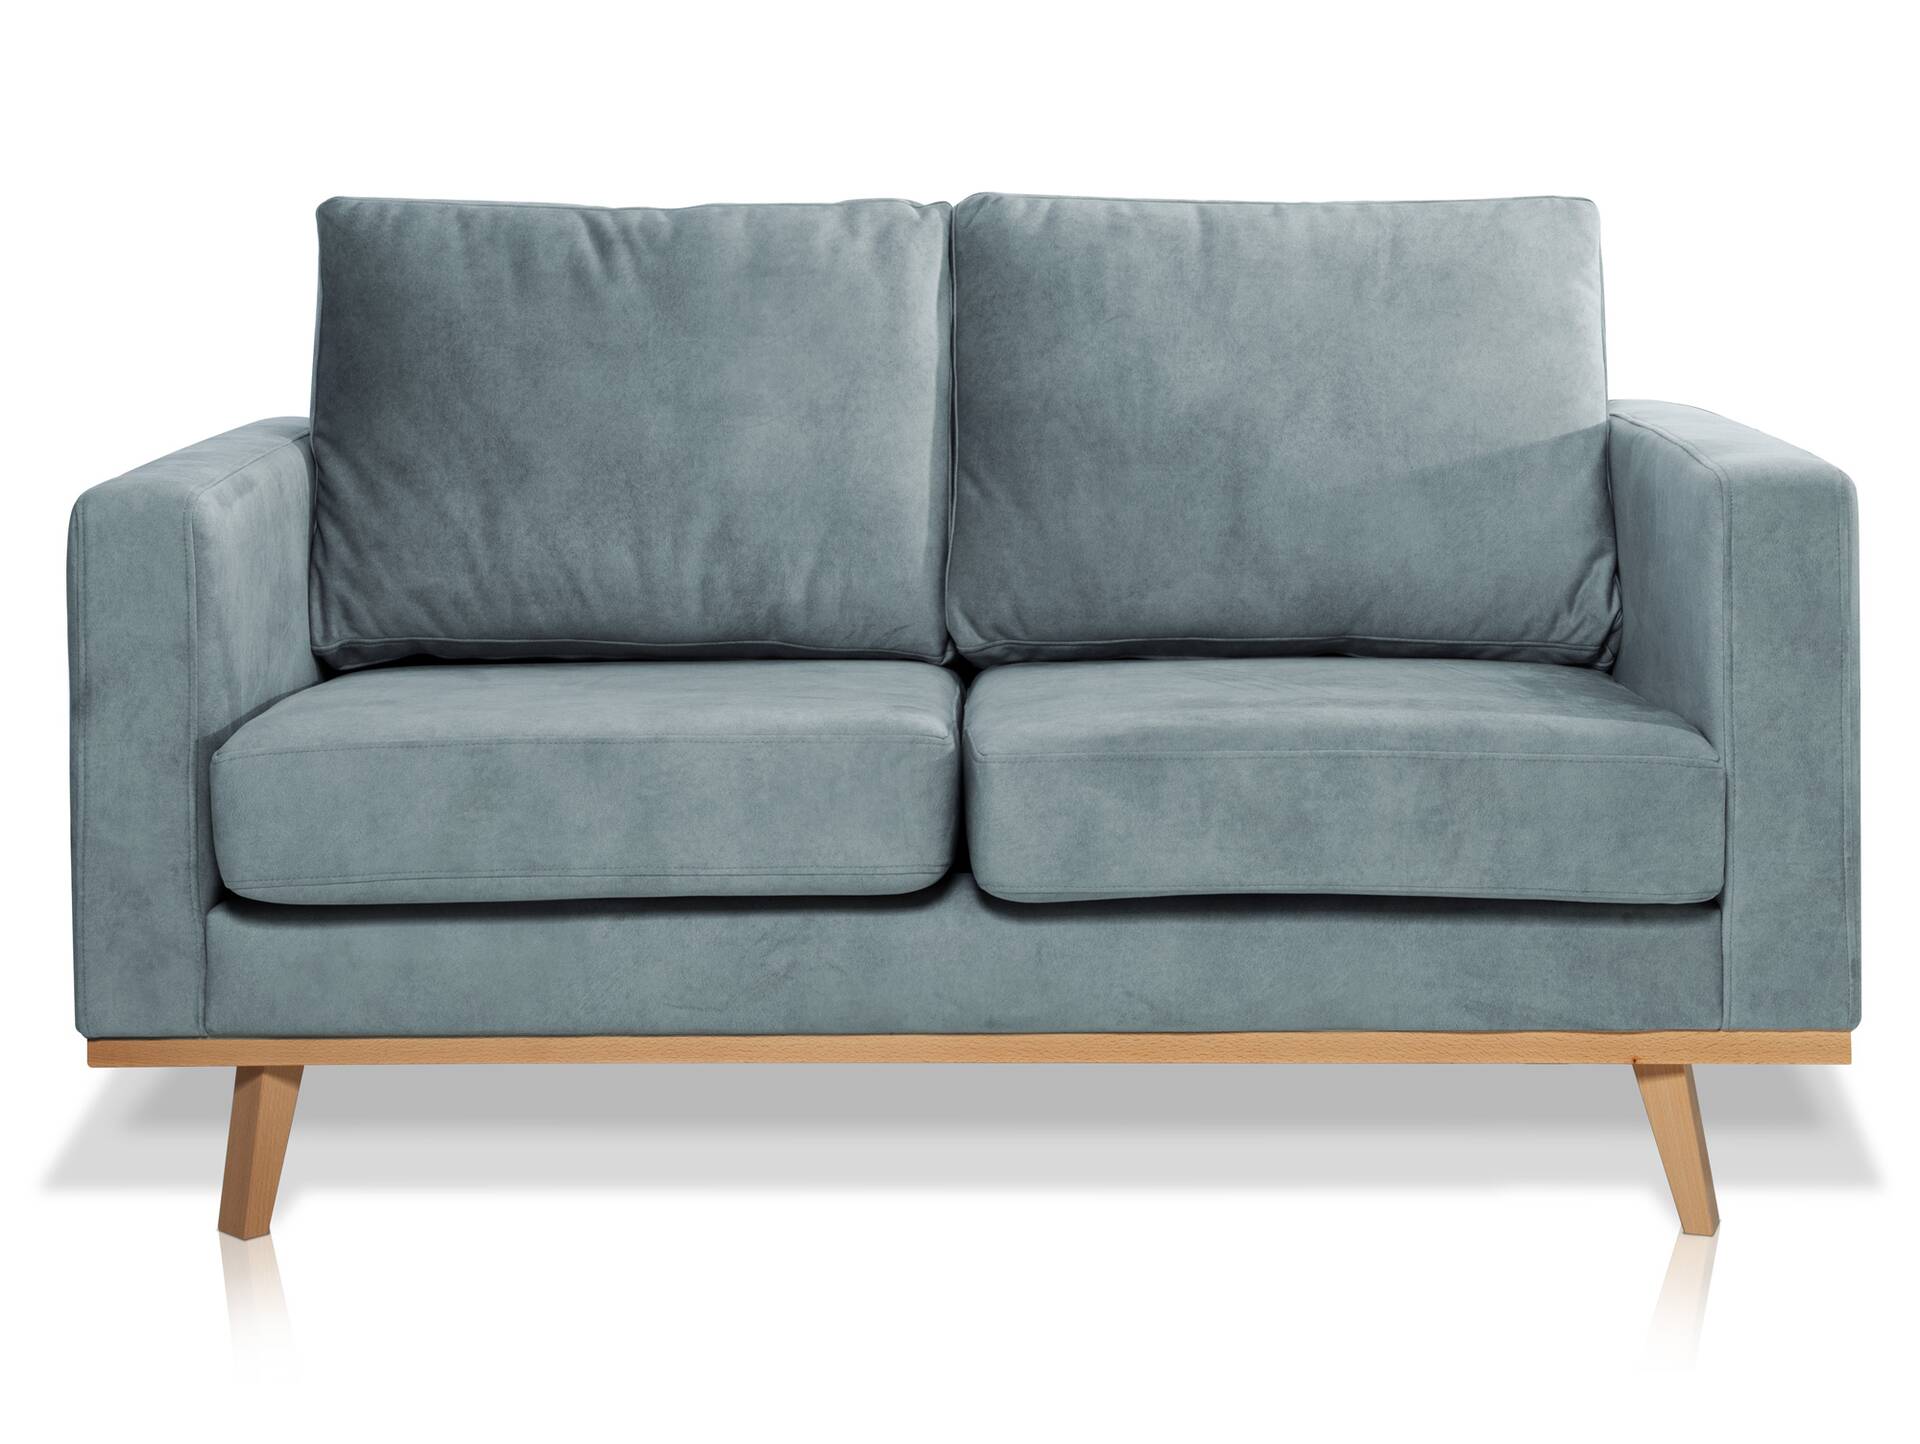 CORIN 2-Sitzer Sofa mit Echtholz-Untergestell, Bezug in Velour-Optik Mint